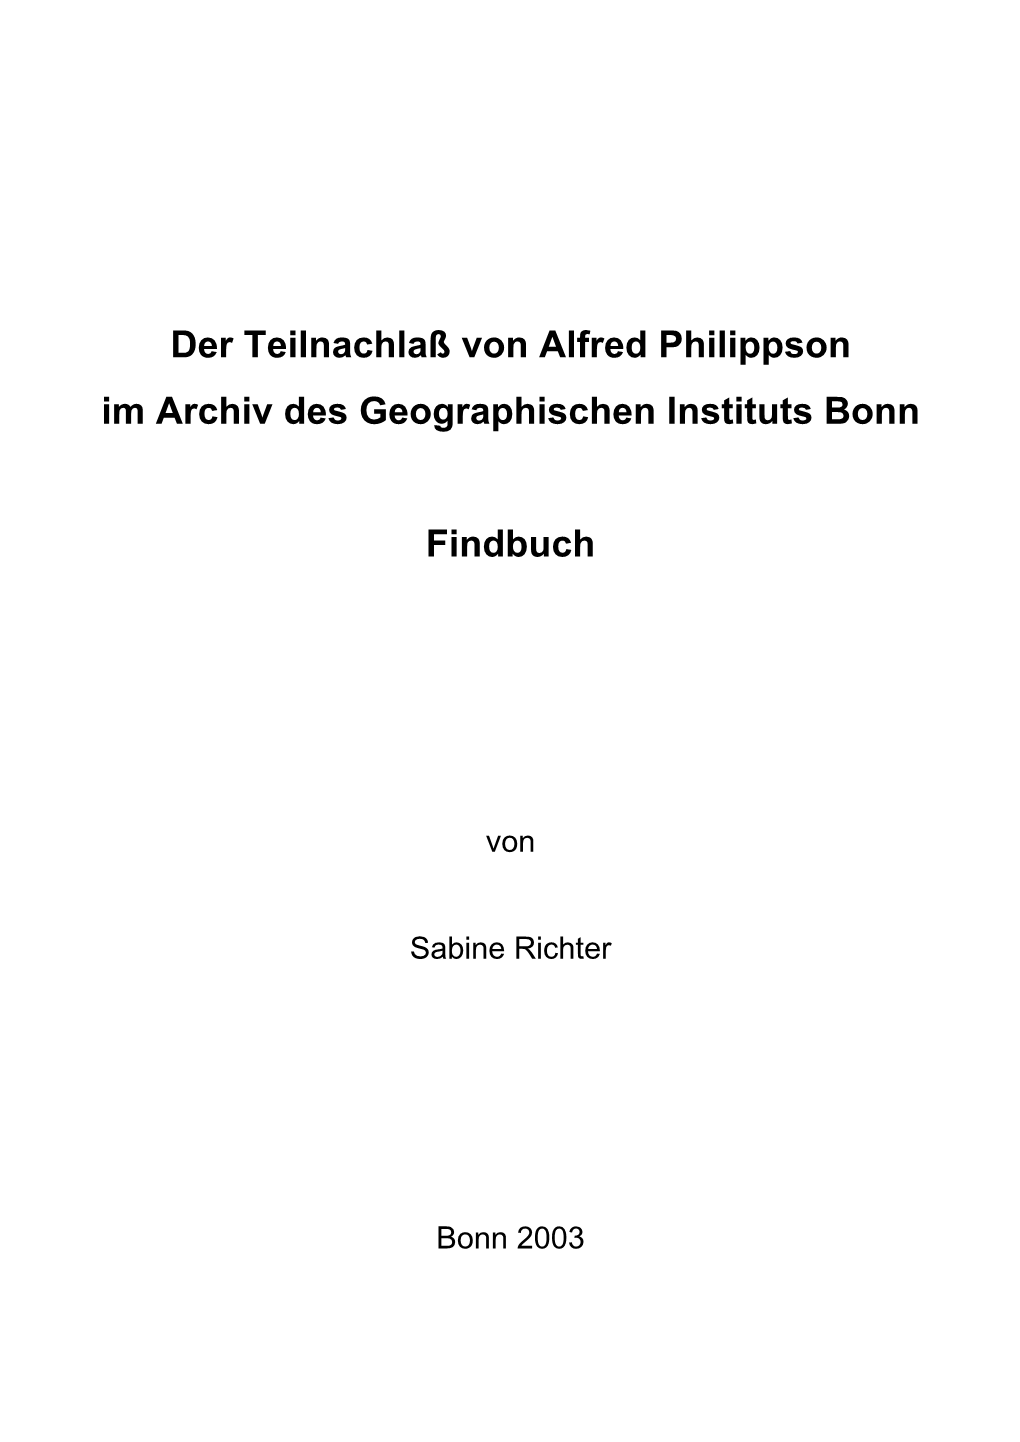 Findbuch Philippson.Pdf